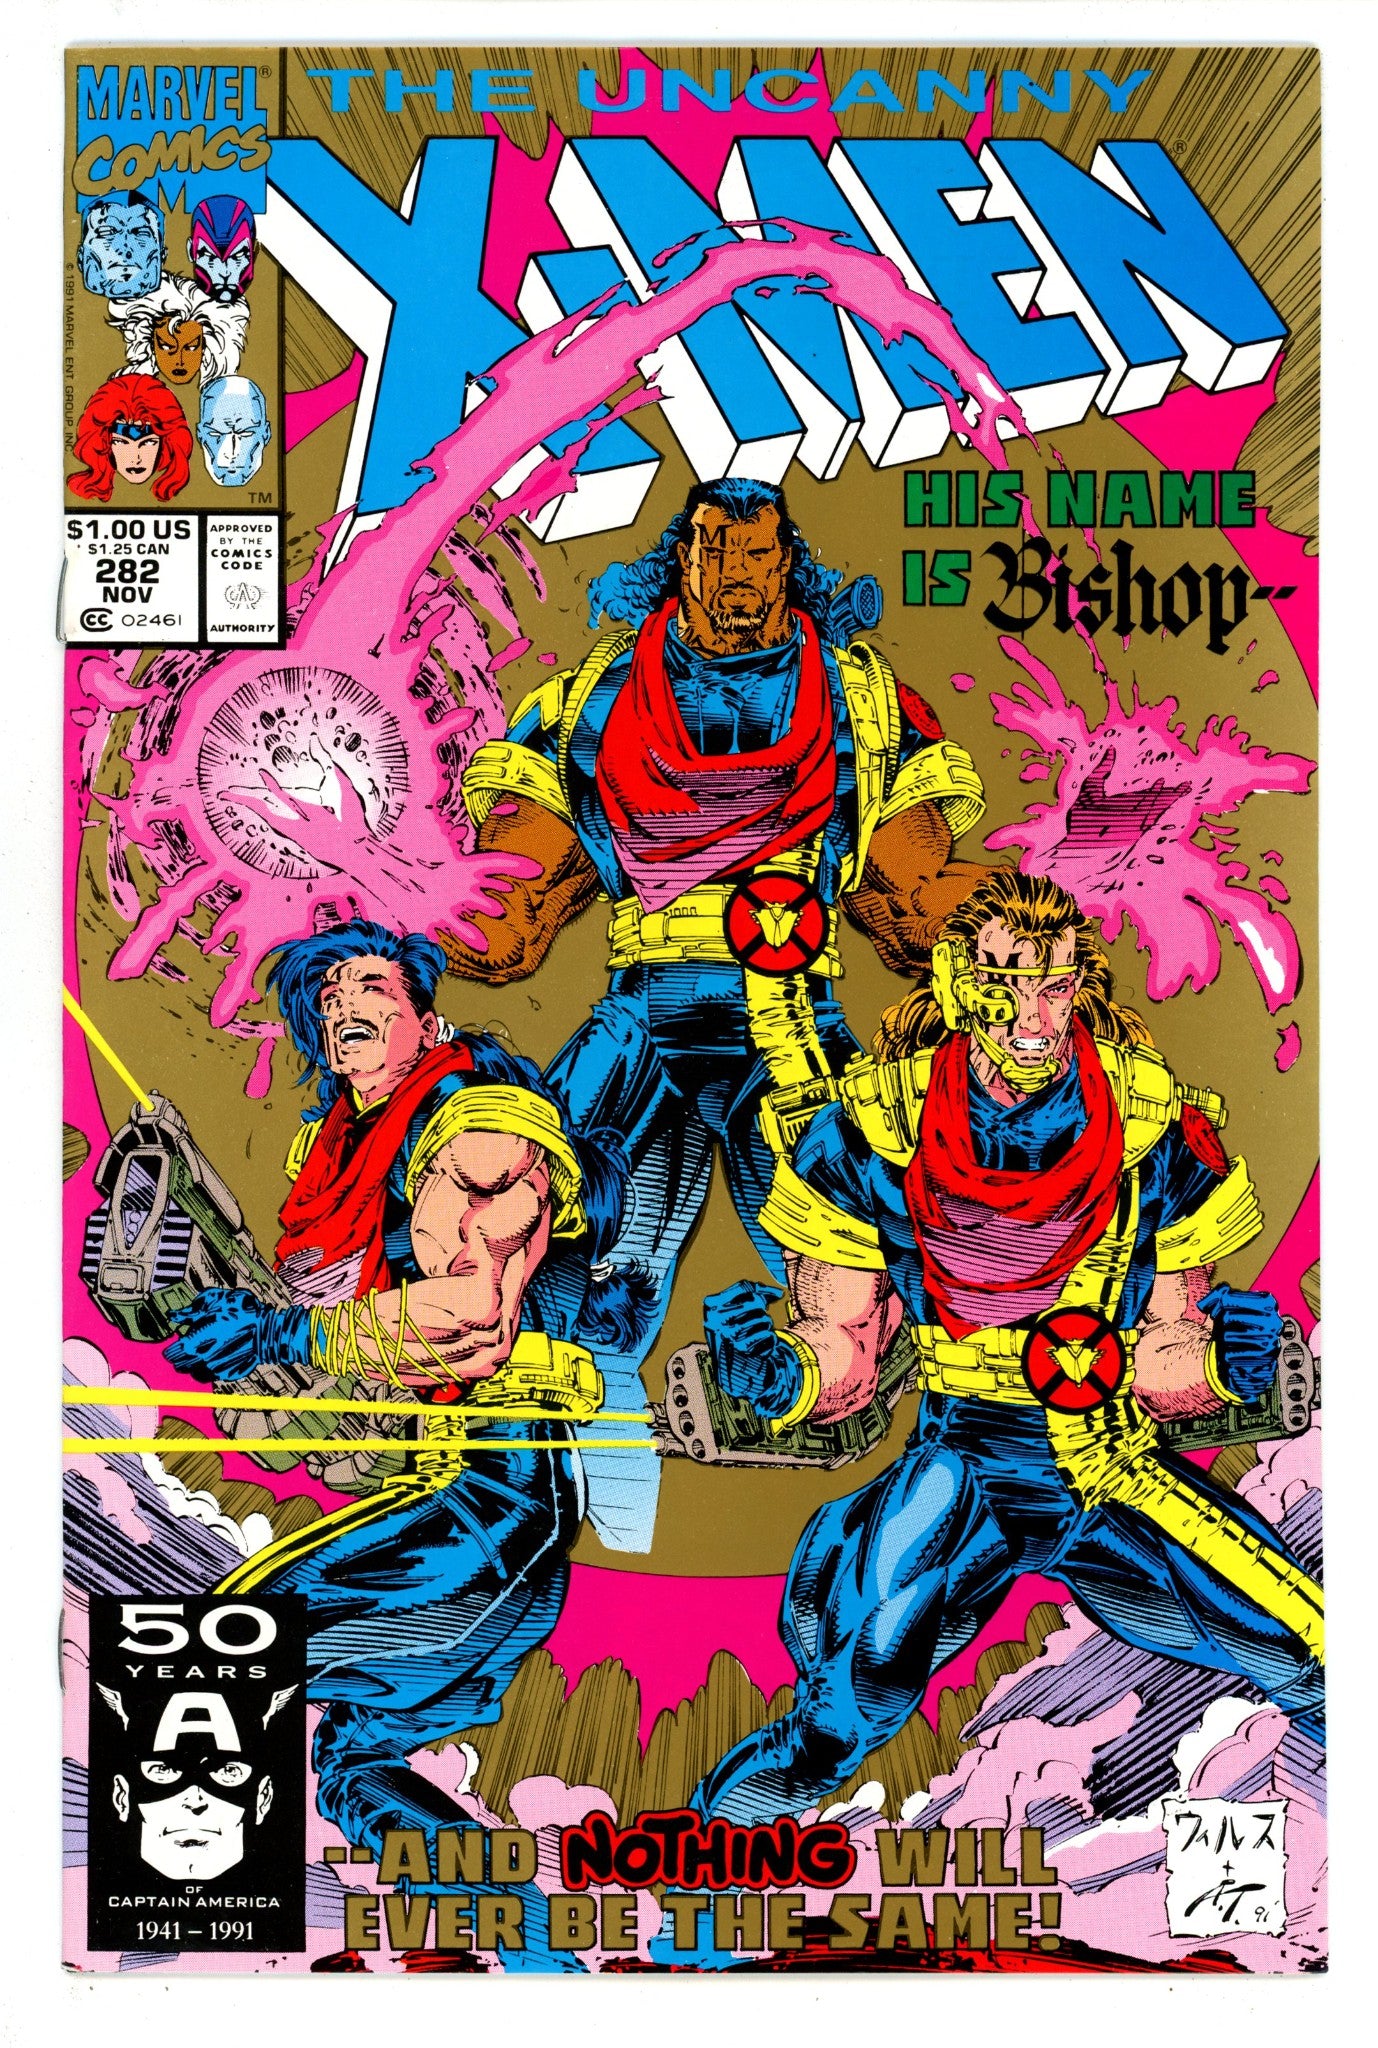 The Uncanny X-Men Vol 1 282 VF+ (8.5) (1991) 2nd Print 